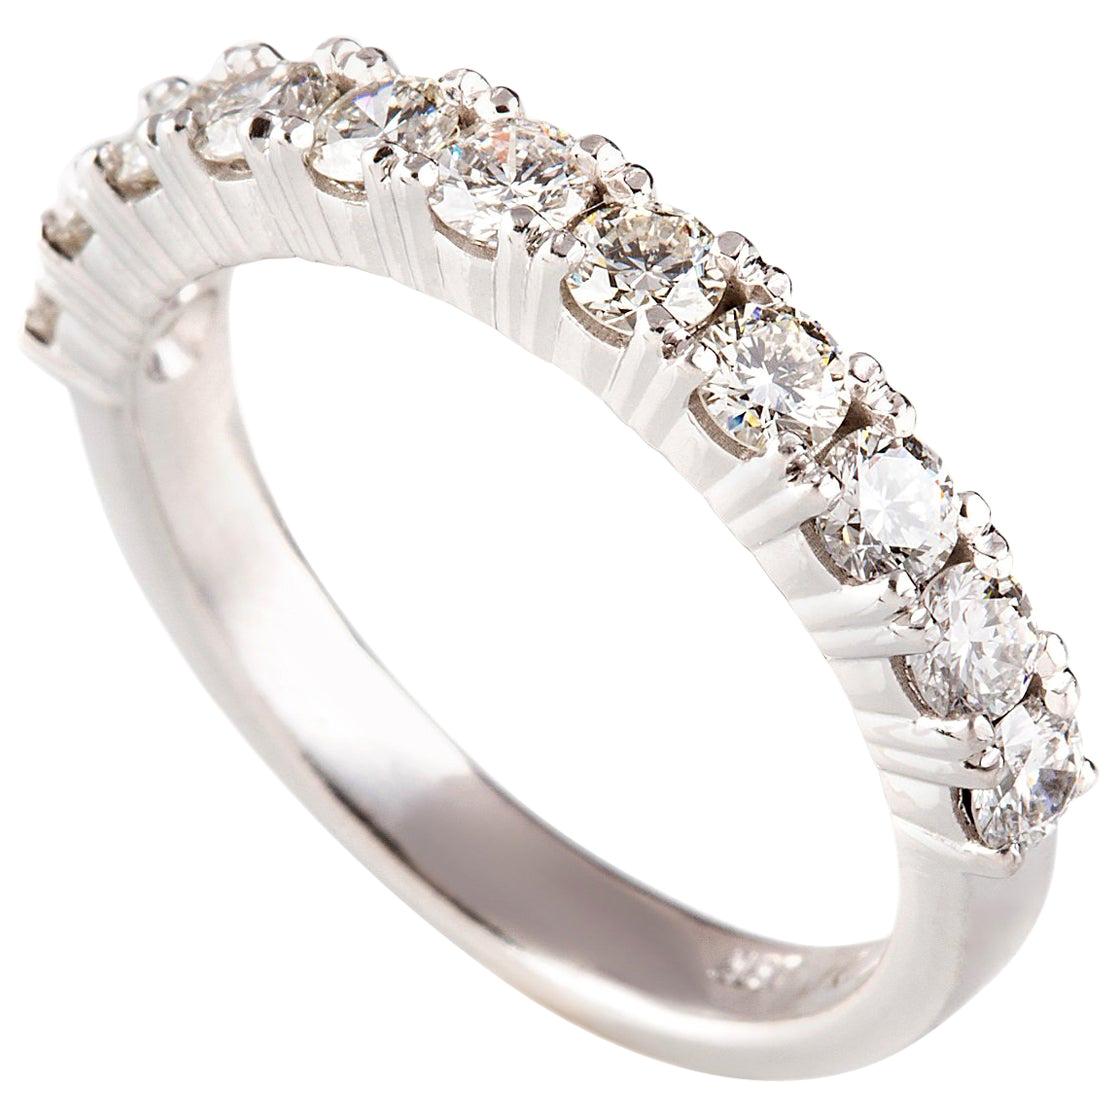 1.05 Carat Round Brilliant Cut Diamond Bridal Ring in 18 Carat White Gold